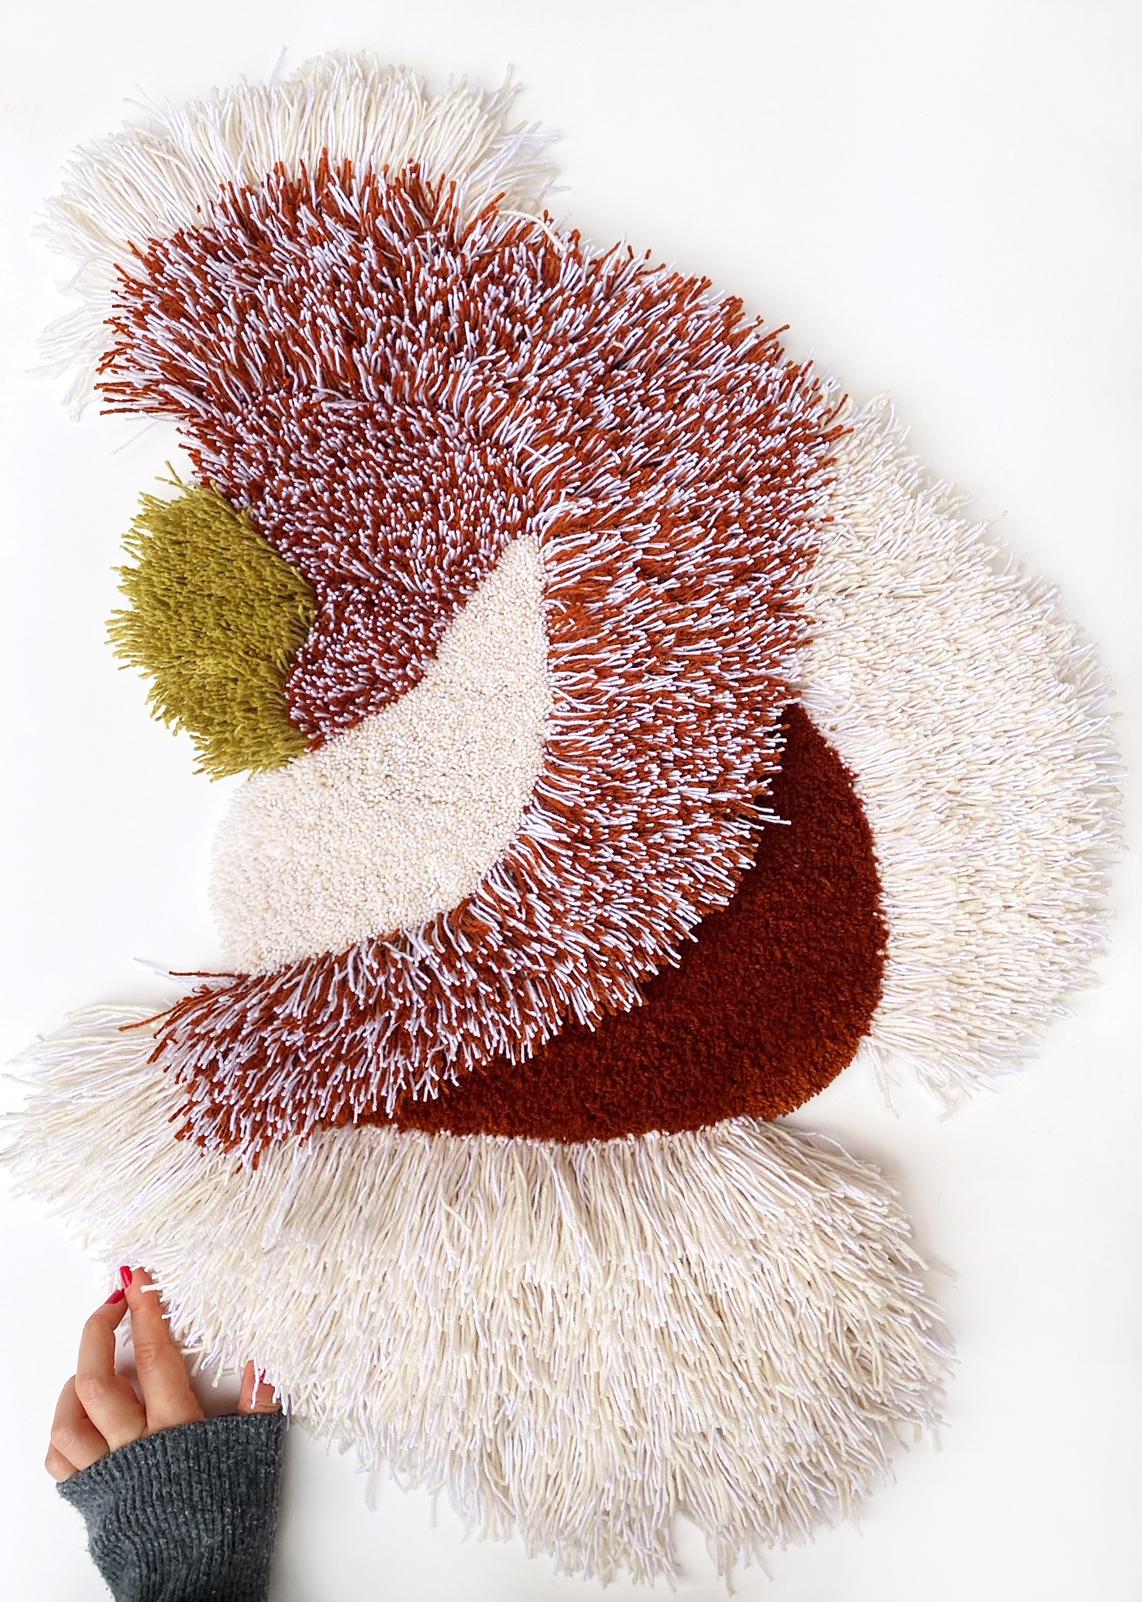 Objet textile - Unique en son genre.
Fabriqué à la main par l'artiste à Copenhague à partir de 100 % de laine.
La forme organique fluide et la douceur de la laine ajoutent une grande texture à l'espace.